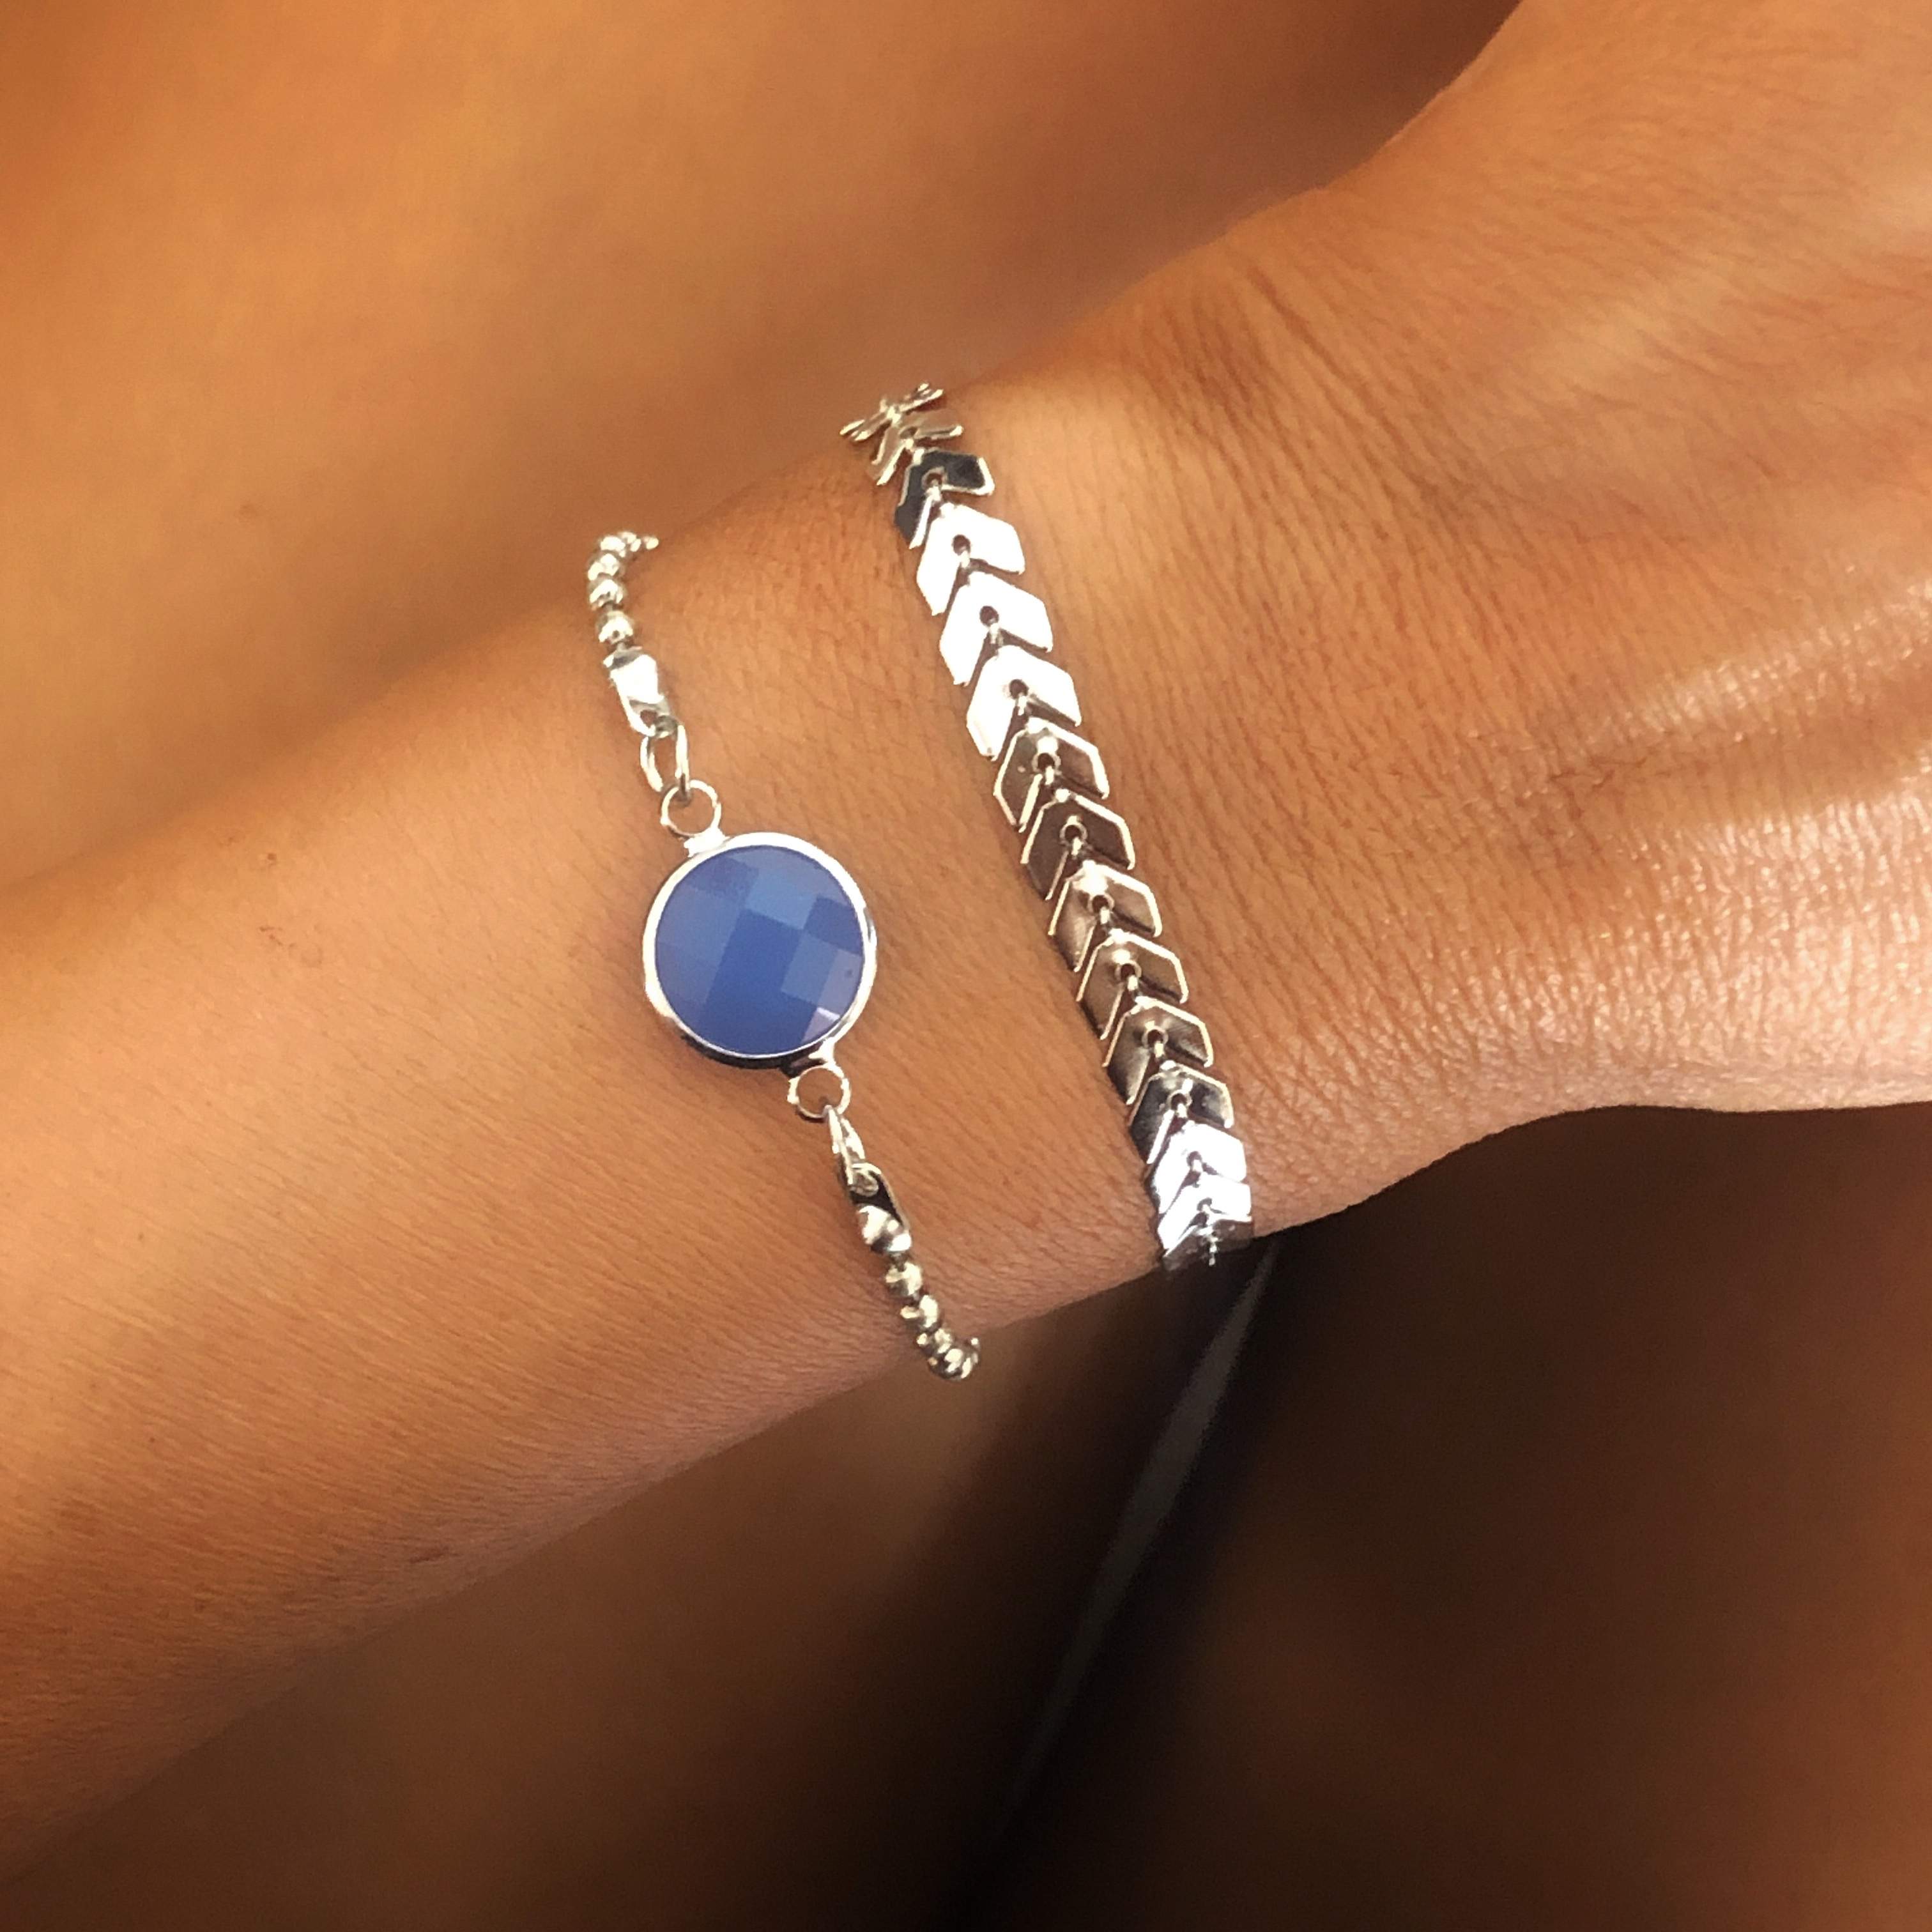 Silver Tuareg Bracelet by ileycom - Cuff bracelets - Afrikrea